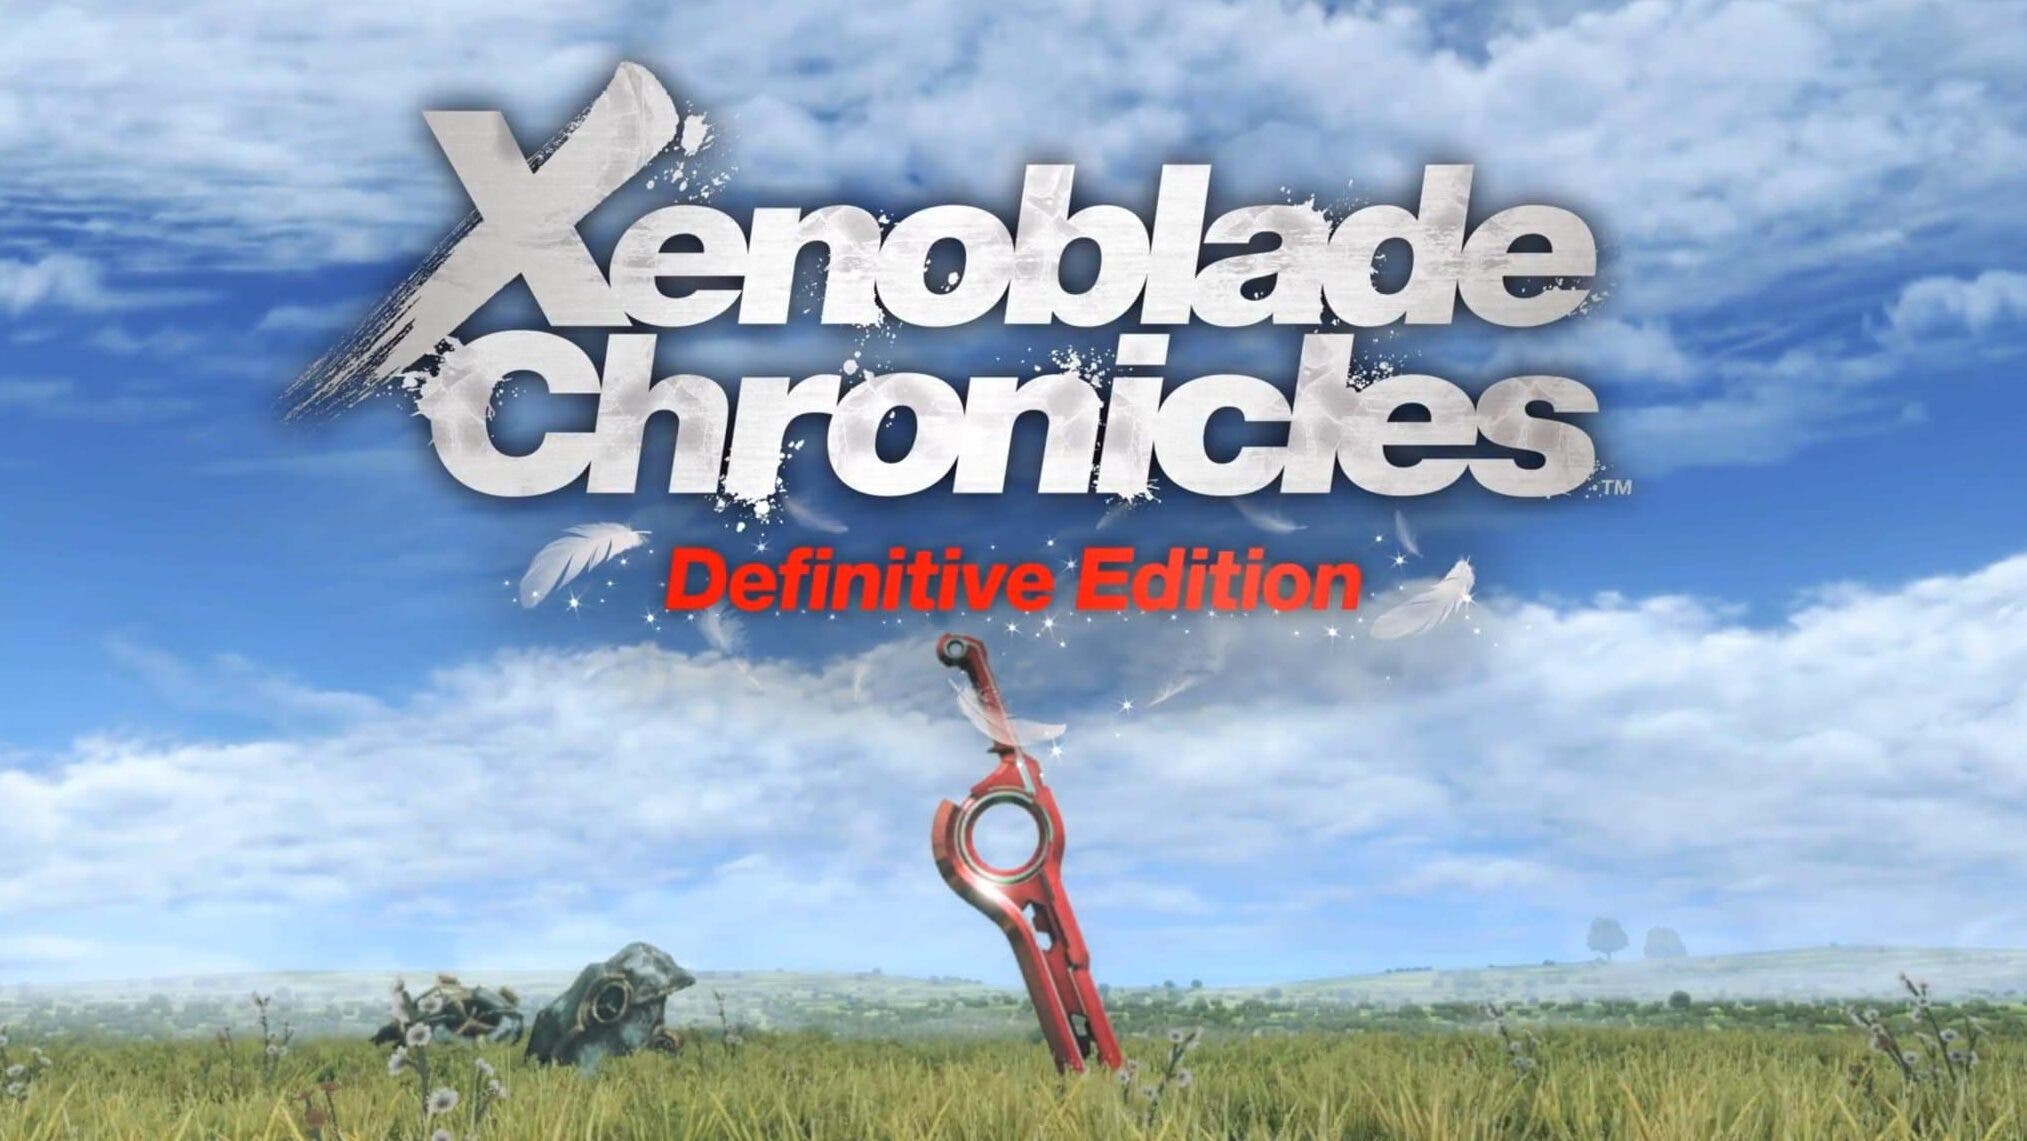 Una minorista danesa lista Xenoblade Chronicles: Definitive Edition para mayo del 2020